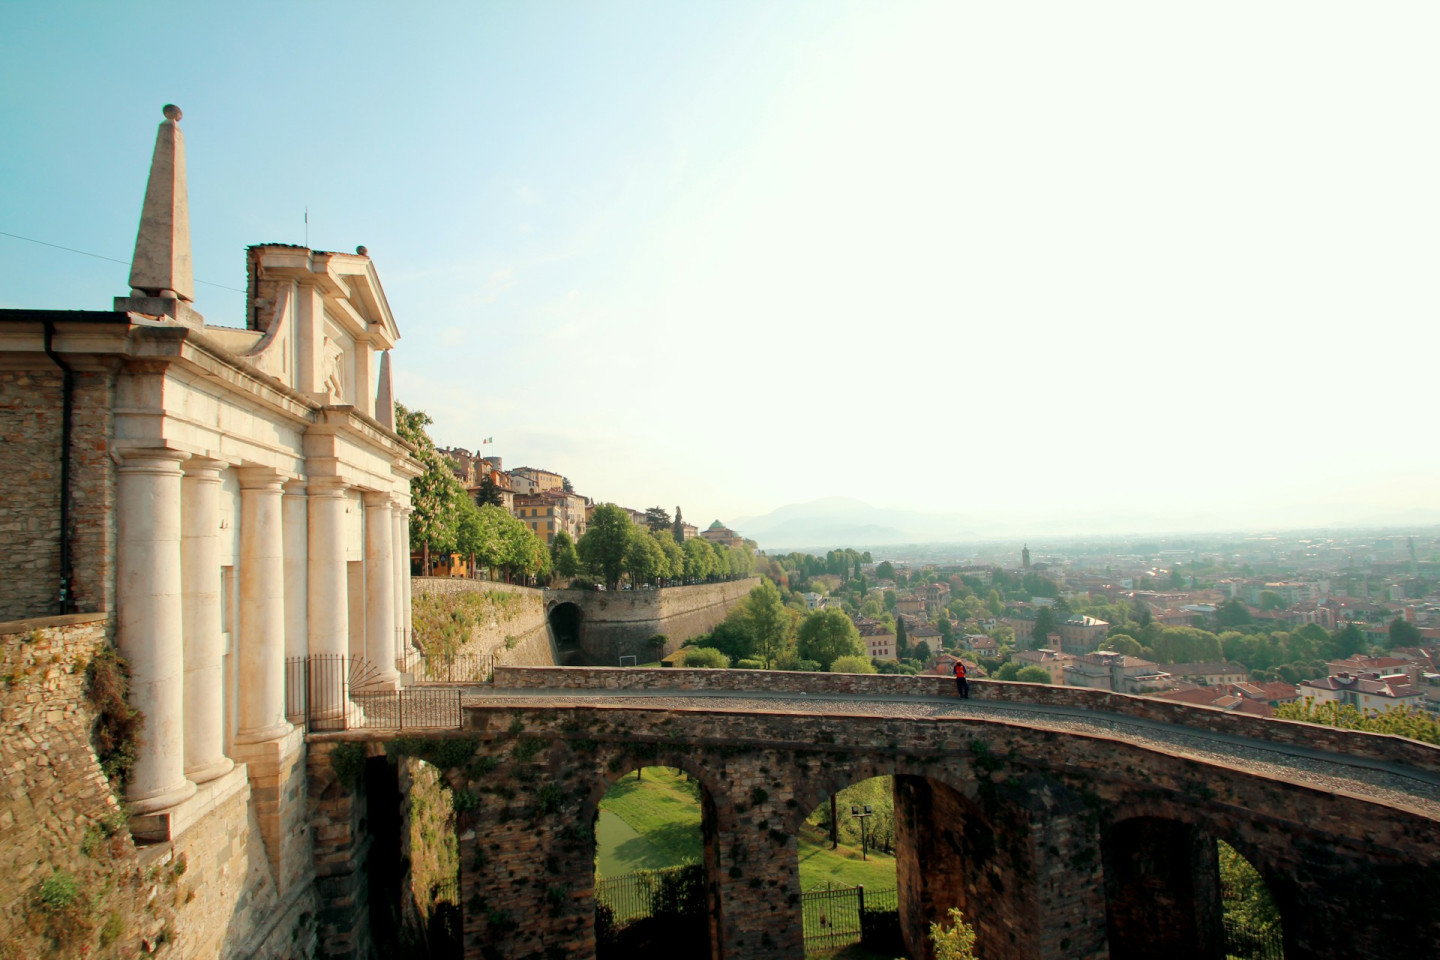 Bergamo upper city in focus with bridge and historic buildings